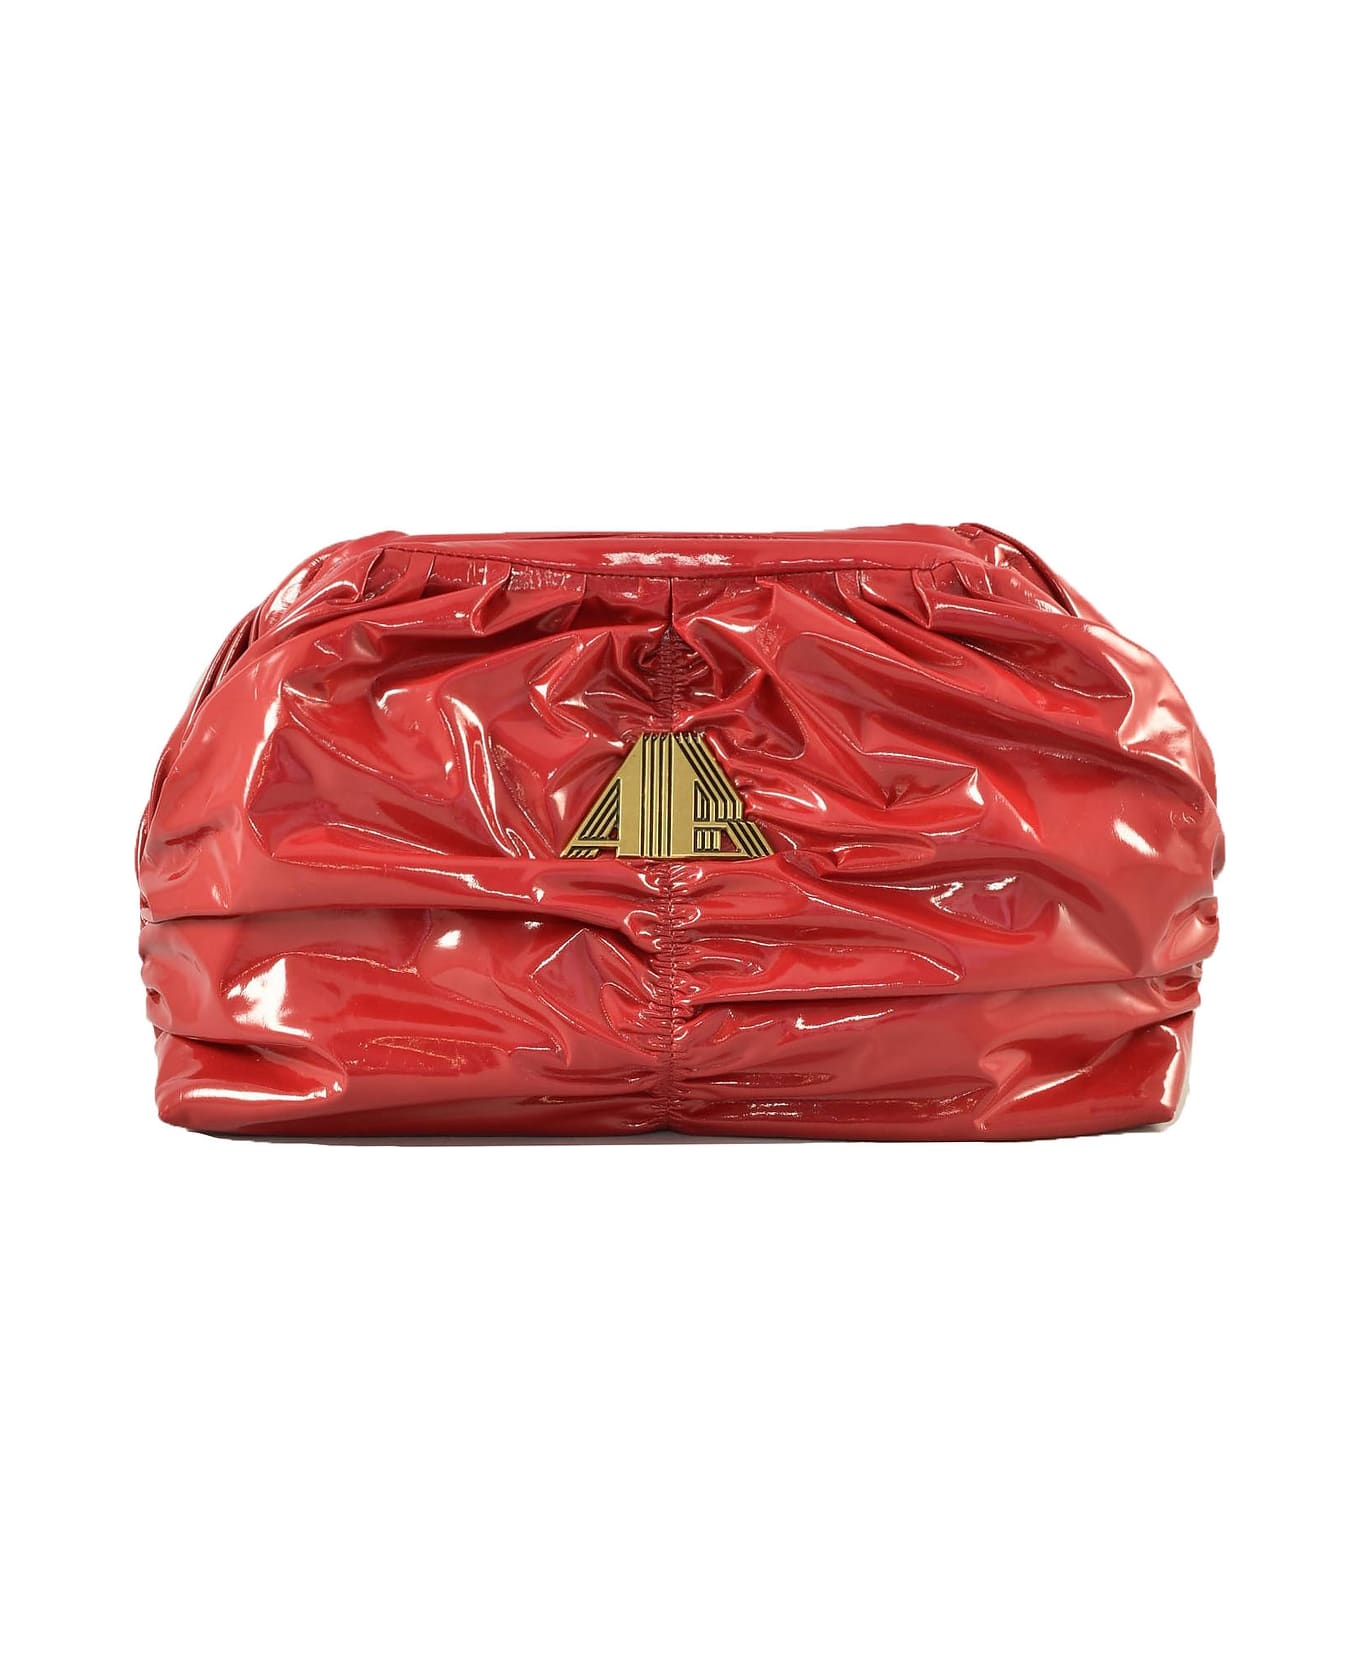 aniye by Women's Strawberry Red Handbag - Red